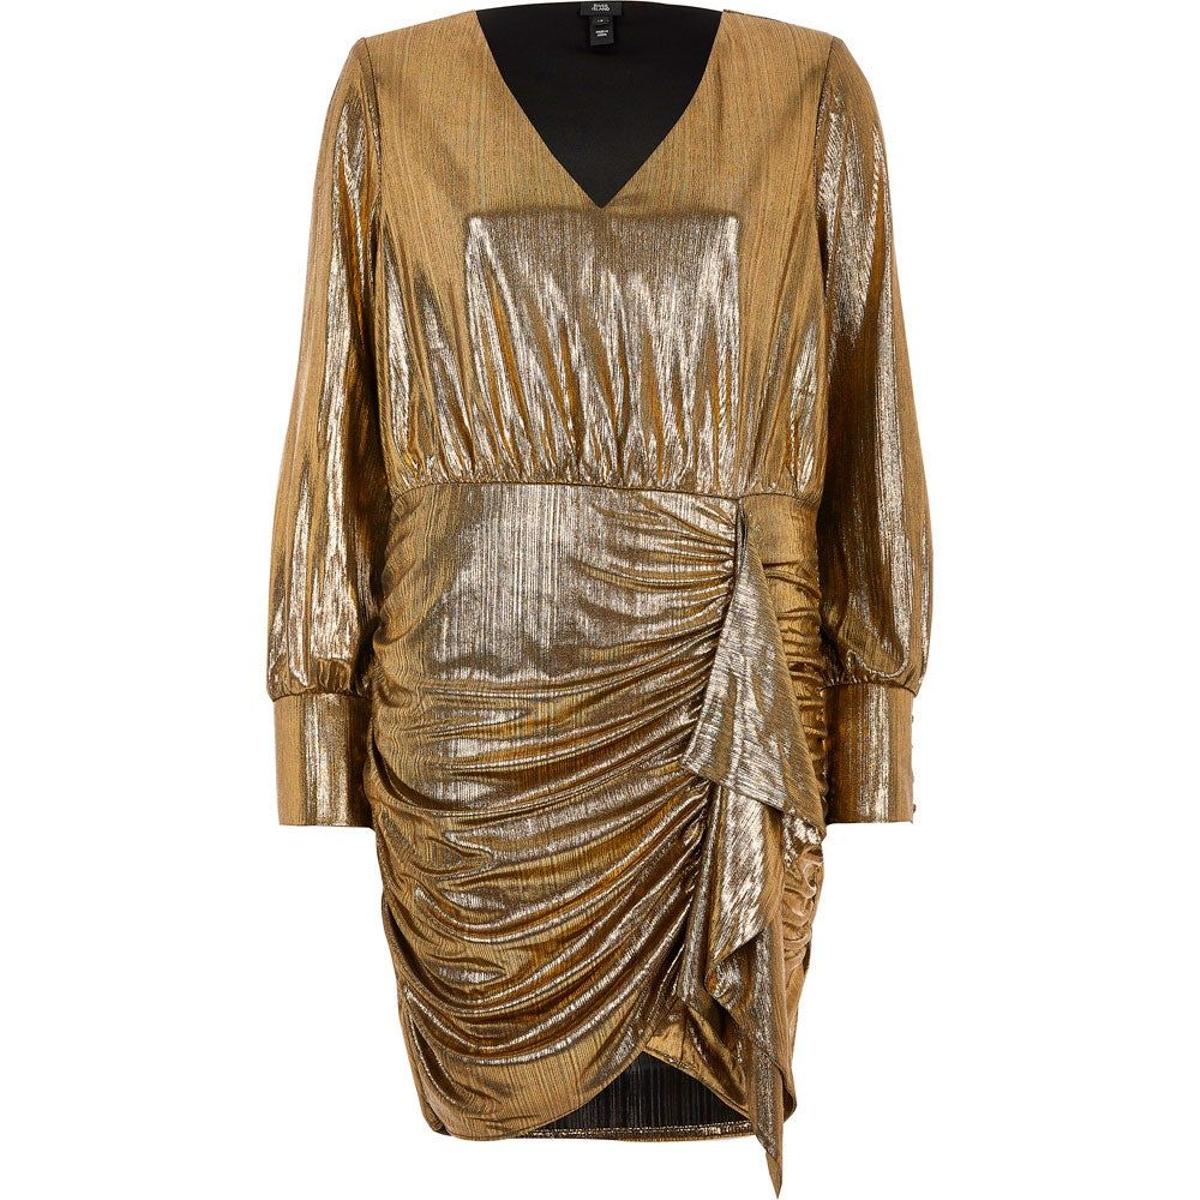 Vestido drapeado en oro de River Island. (Precio: 74 euros)